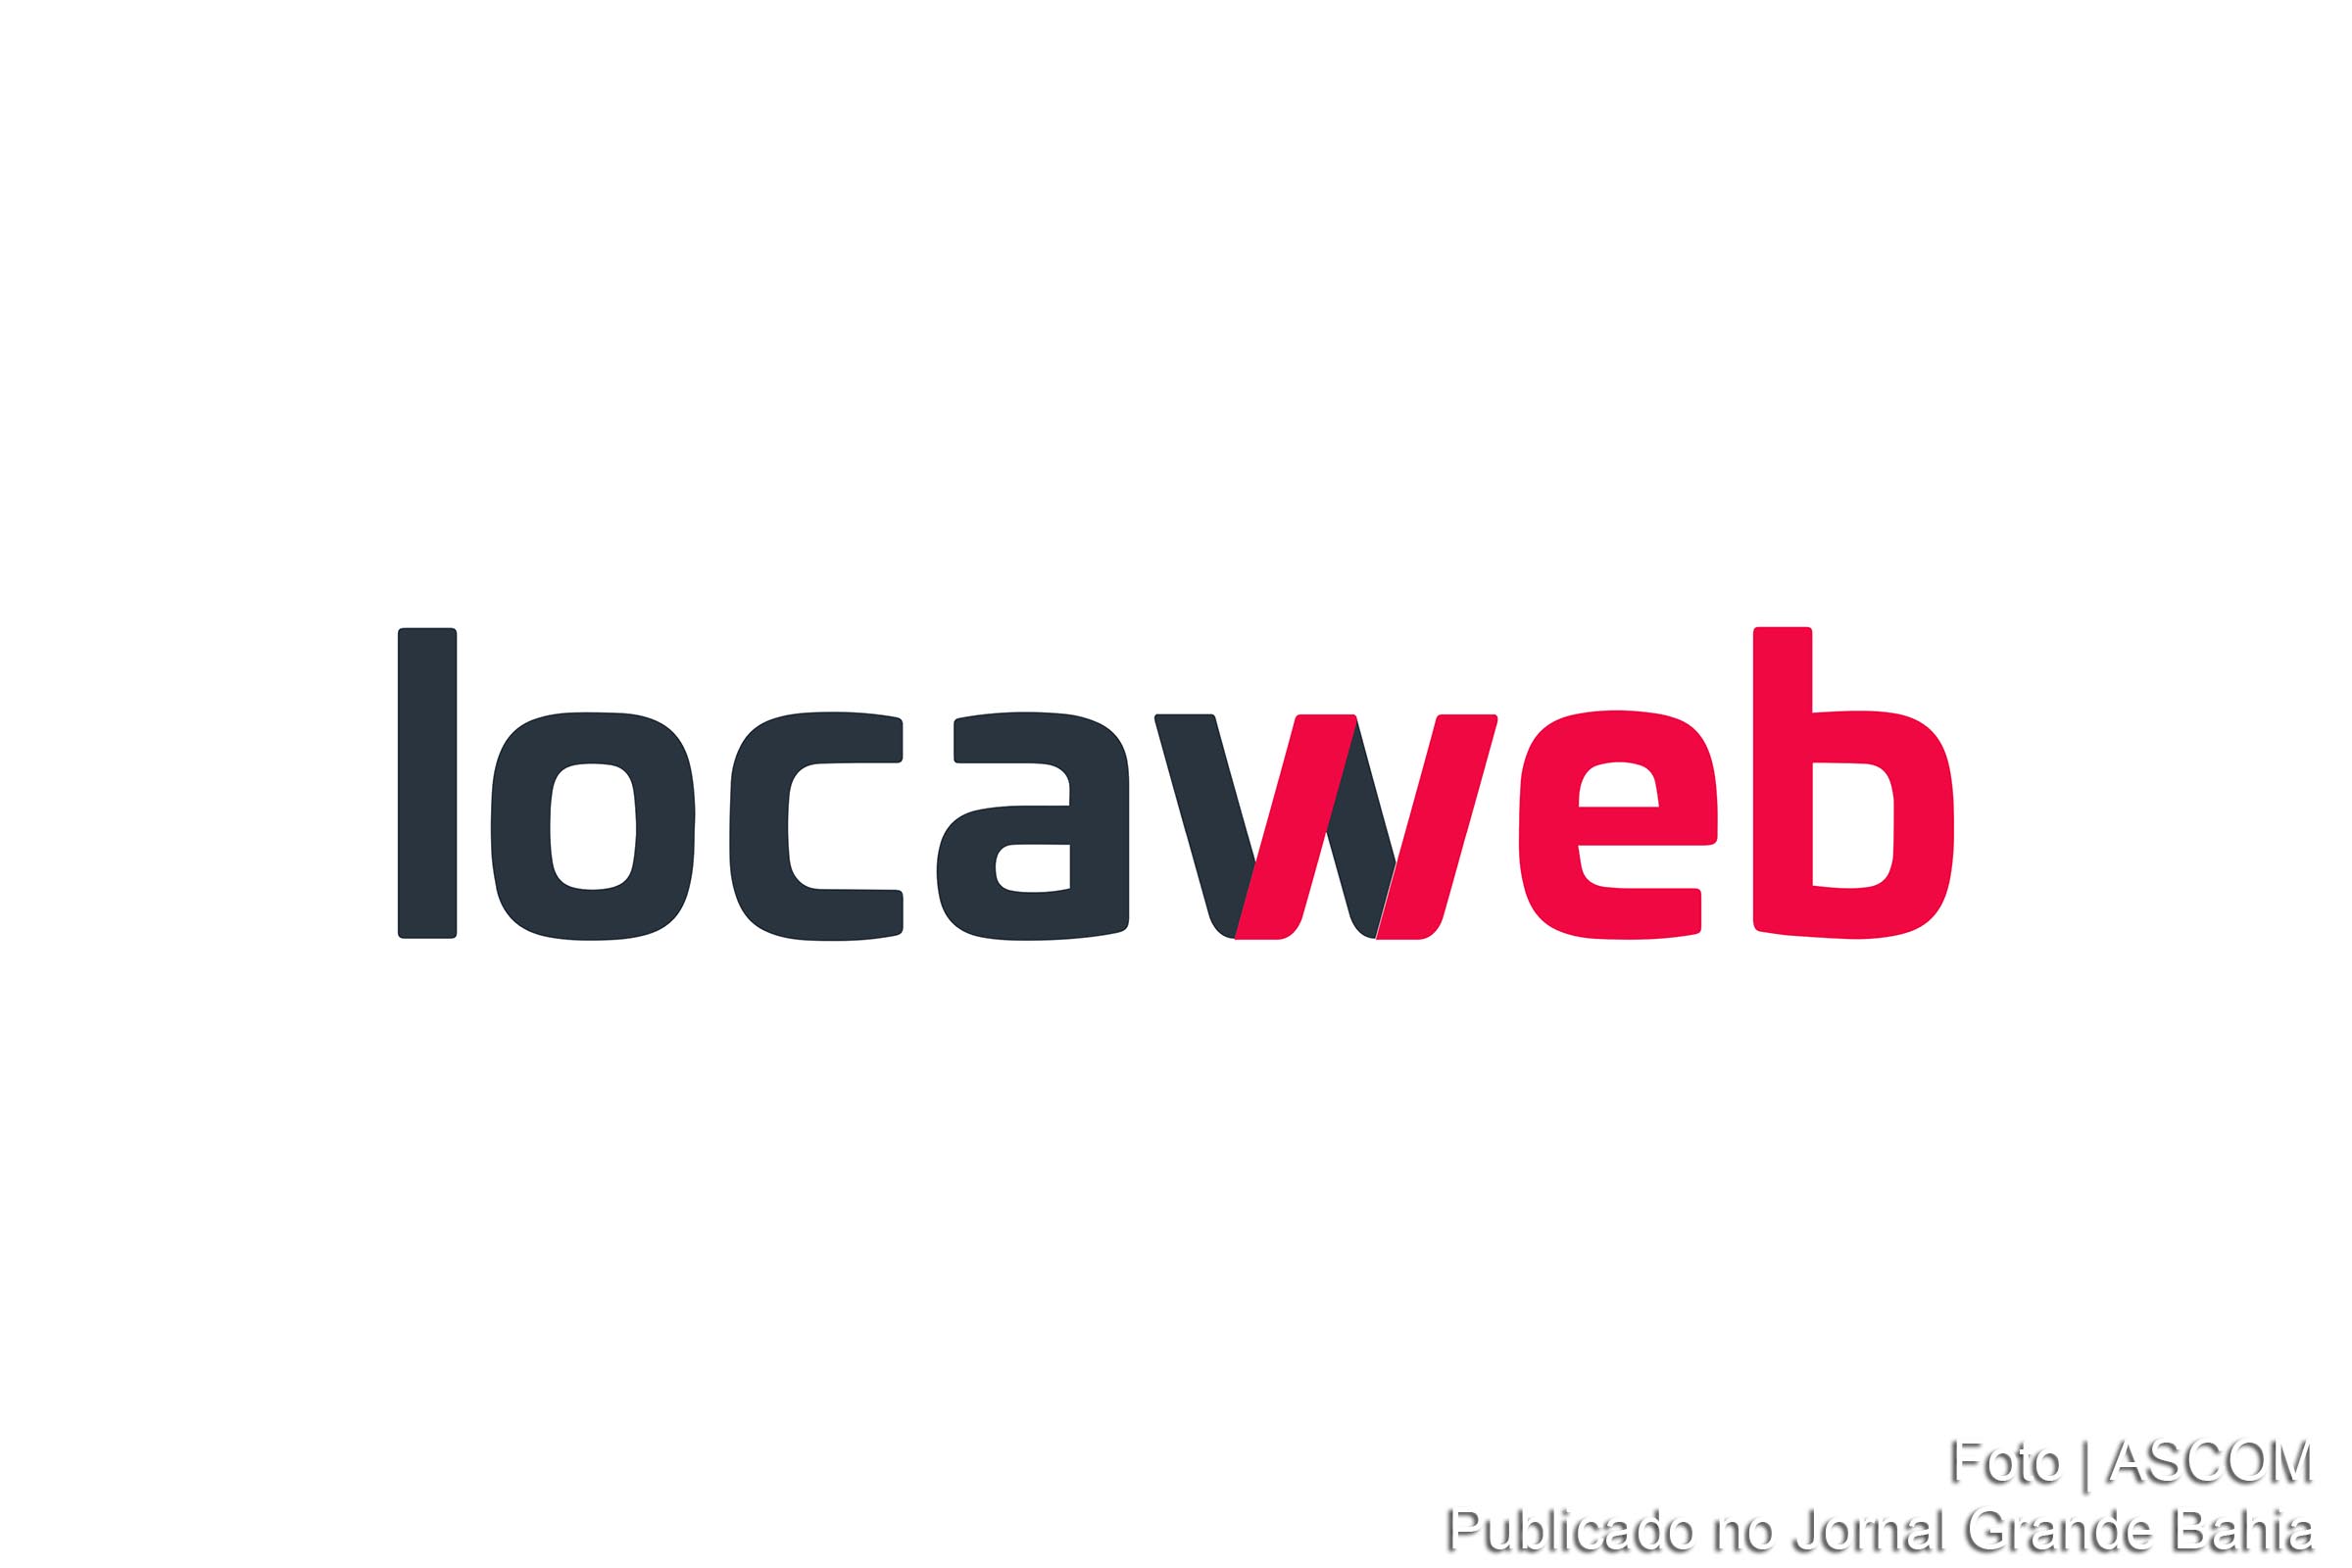 Locaweb é uma empresa brasileira de hospedagem de sites, serviços de internet e computação em nuvem.